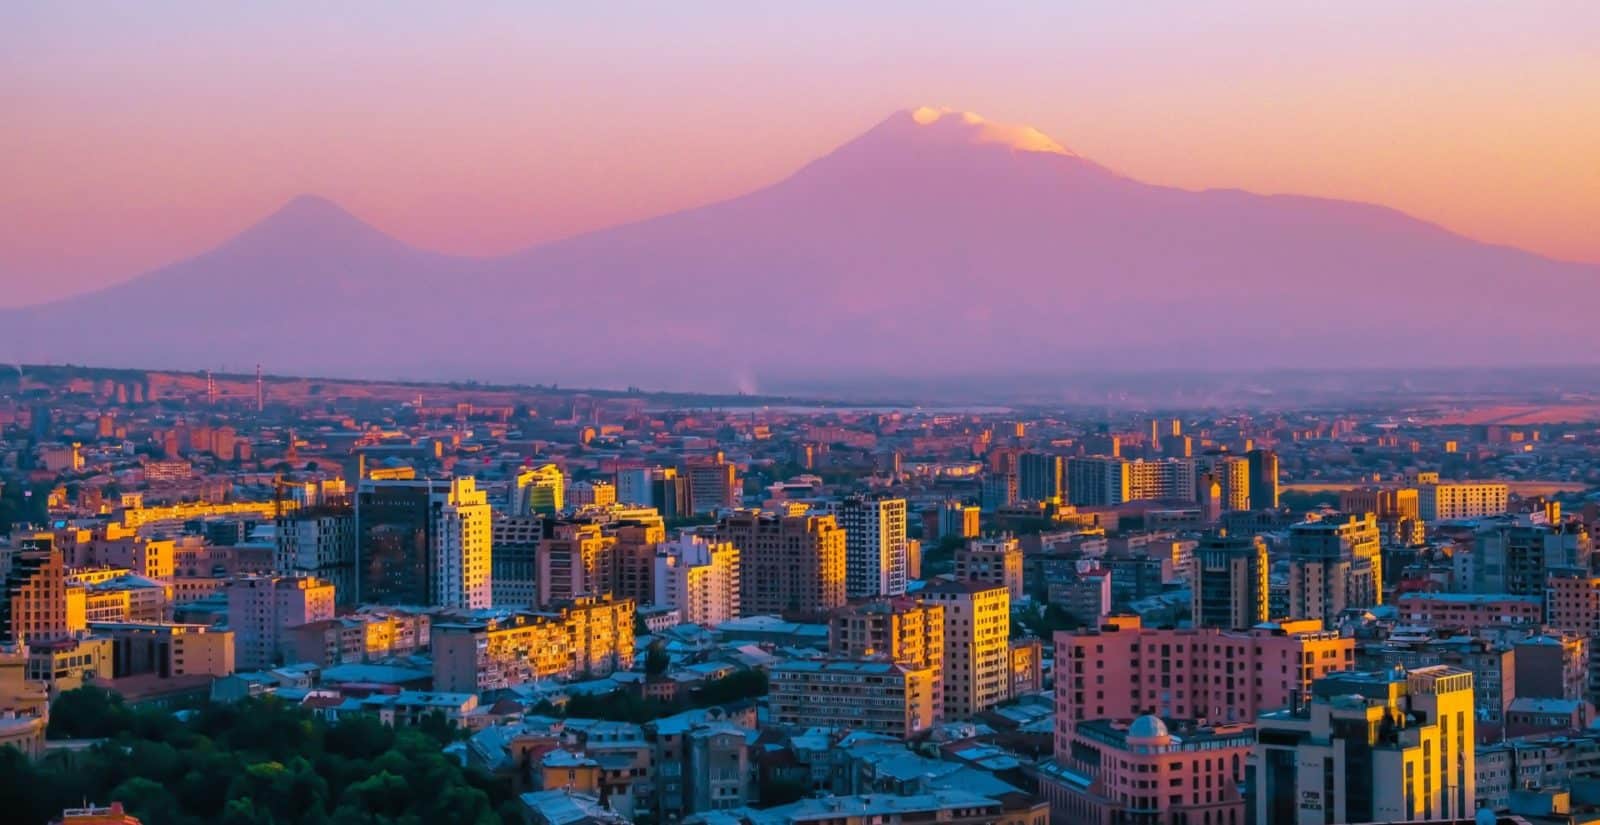 Noina zemlja: Armenija i njezine zanimljivosti